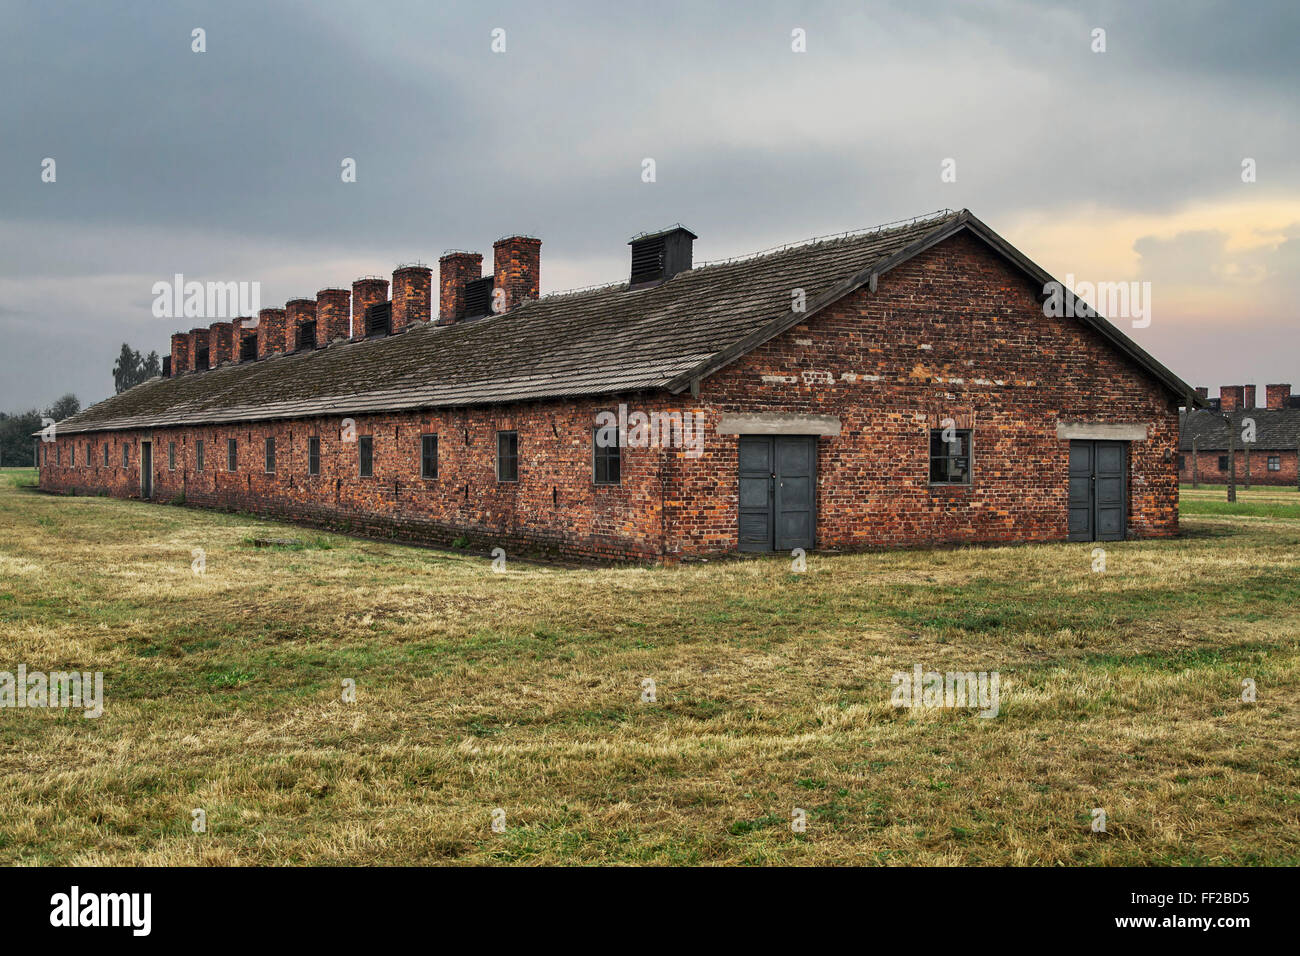 Barrack of the former nazi extermination camp of Auschwitz-Birkenau in Oswiecim, Poland. Stock Photo